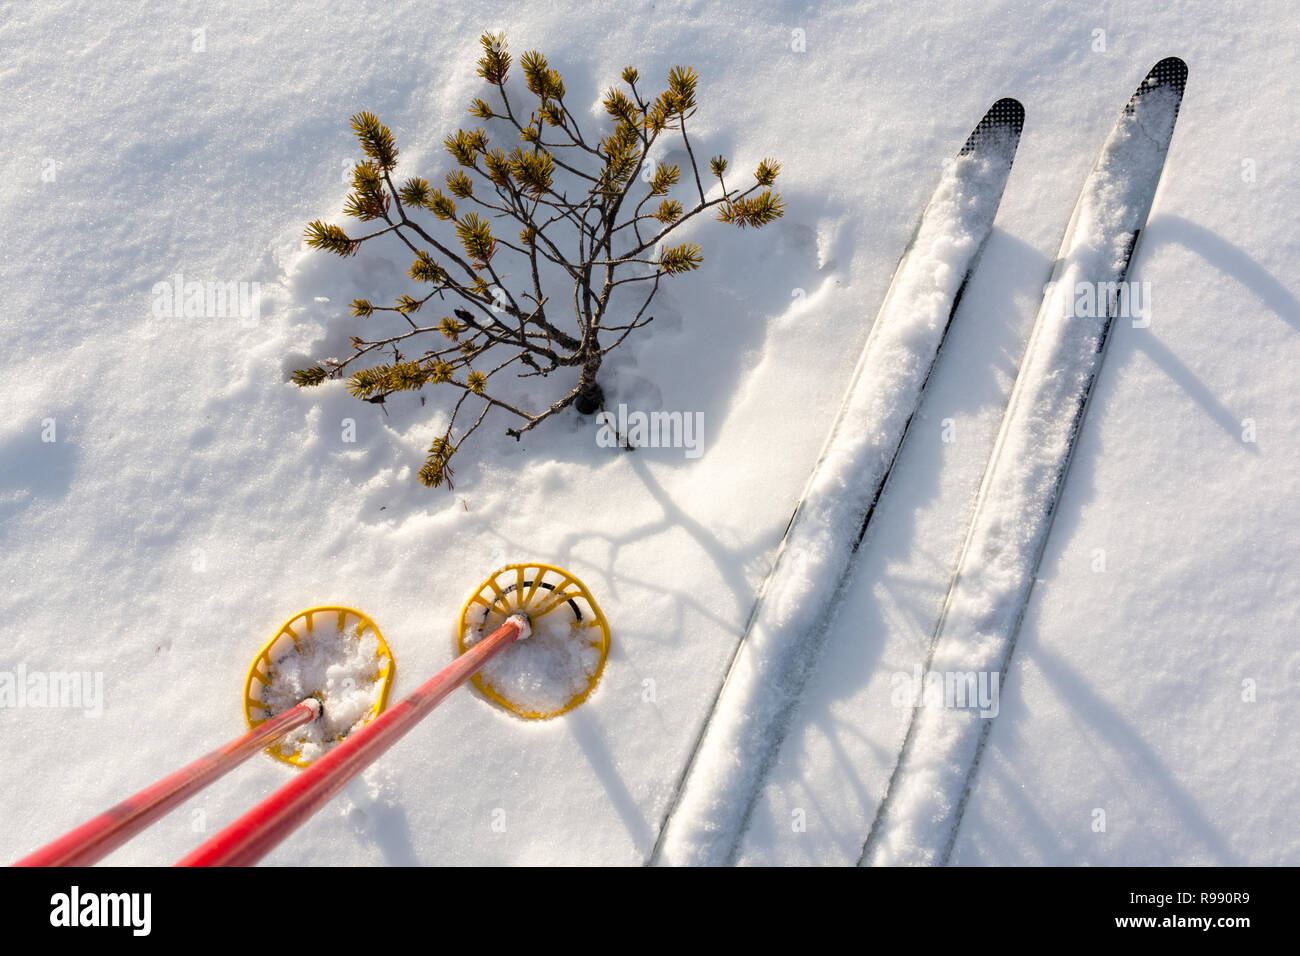 - Die Langlaufskier und Skistöcke auf weißem Schnee mit kleinen verkümmert Kiefer. Stockfoto